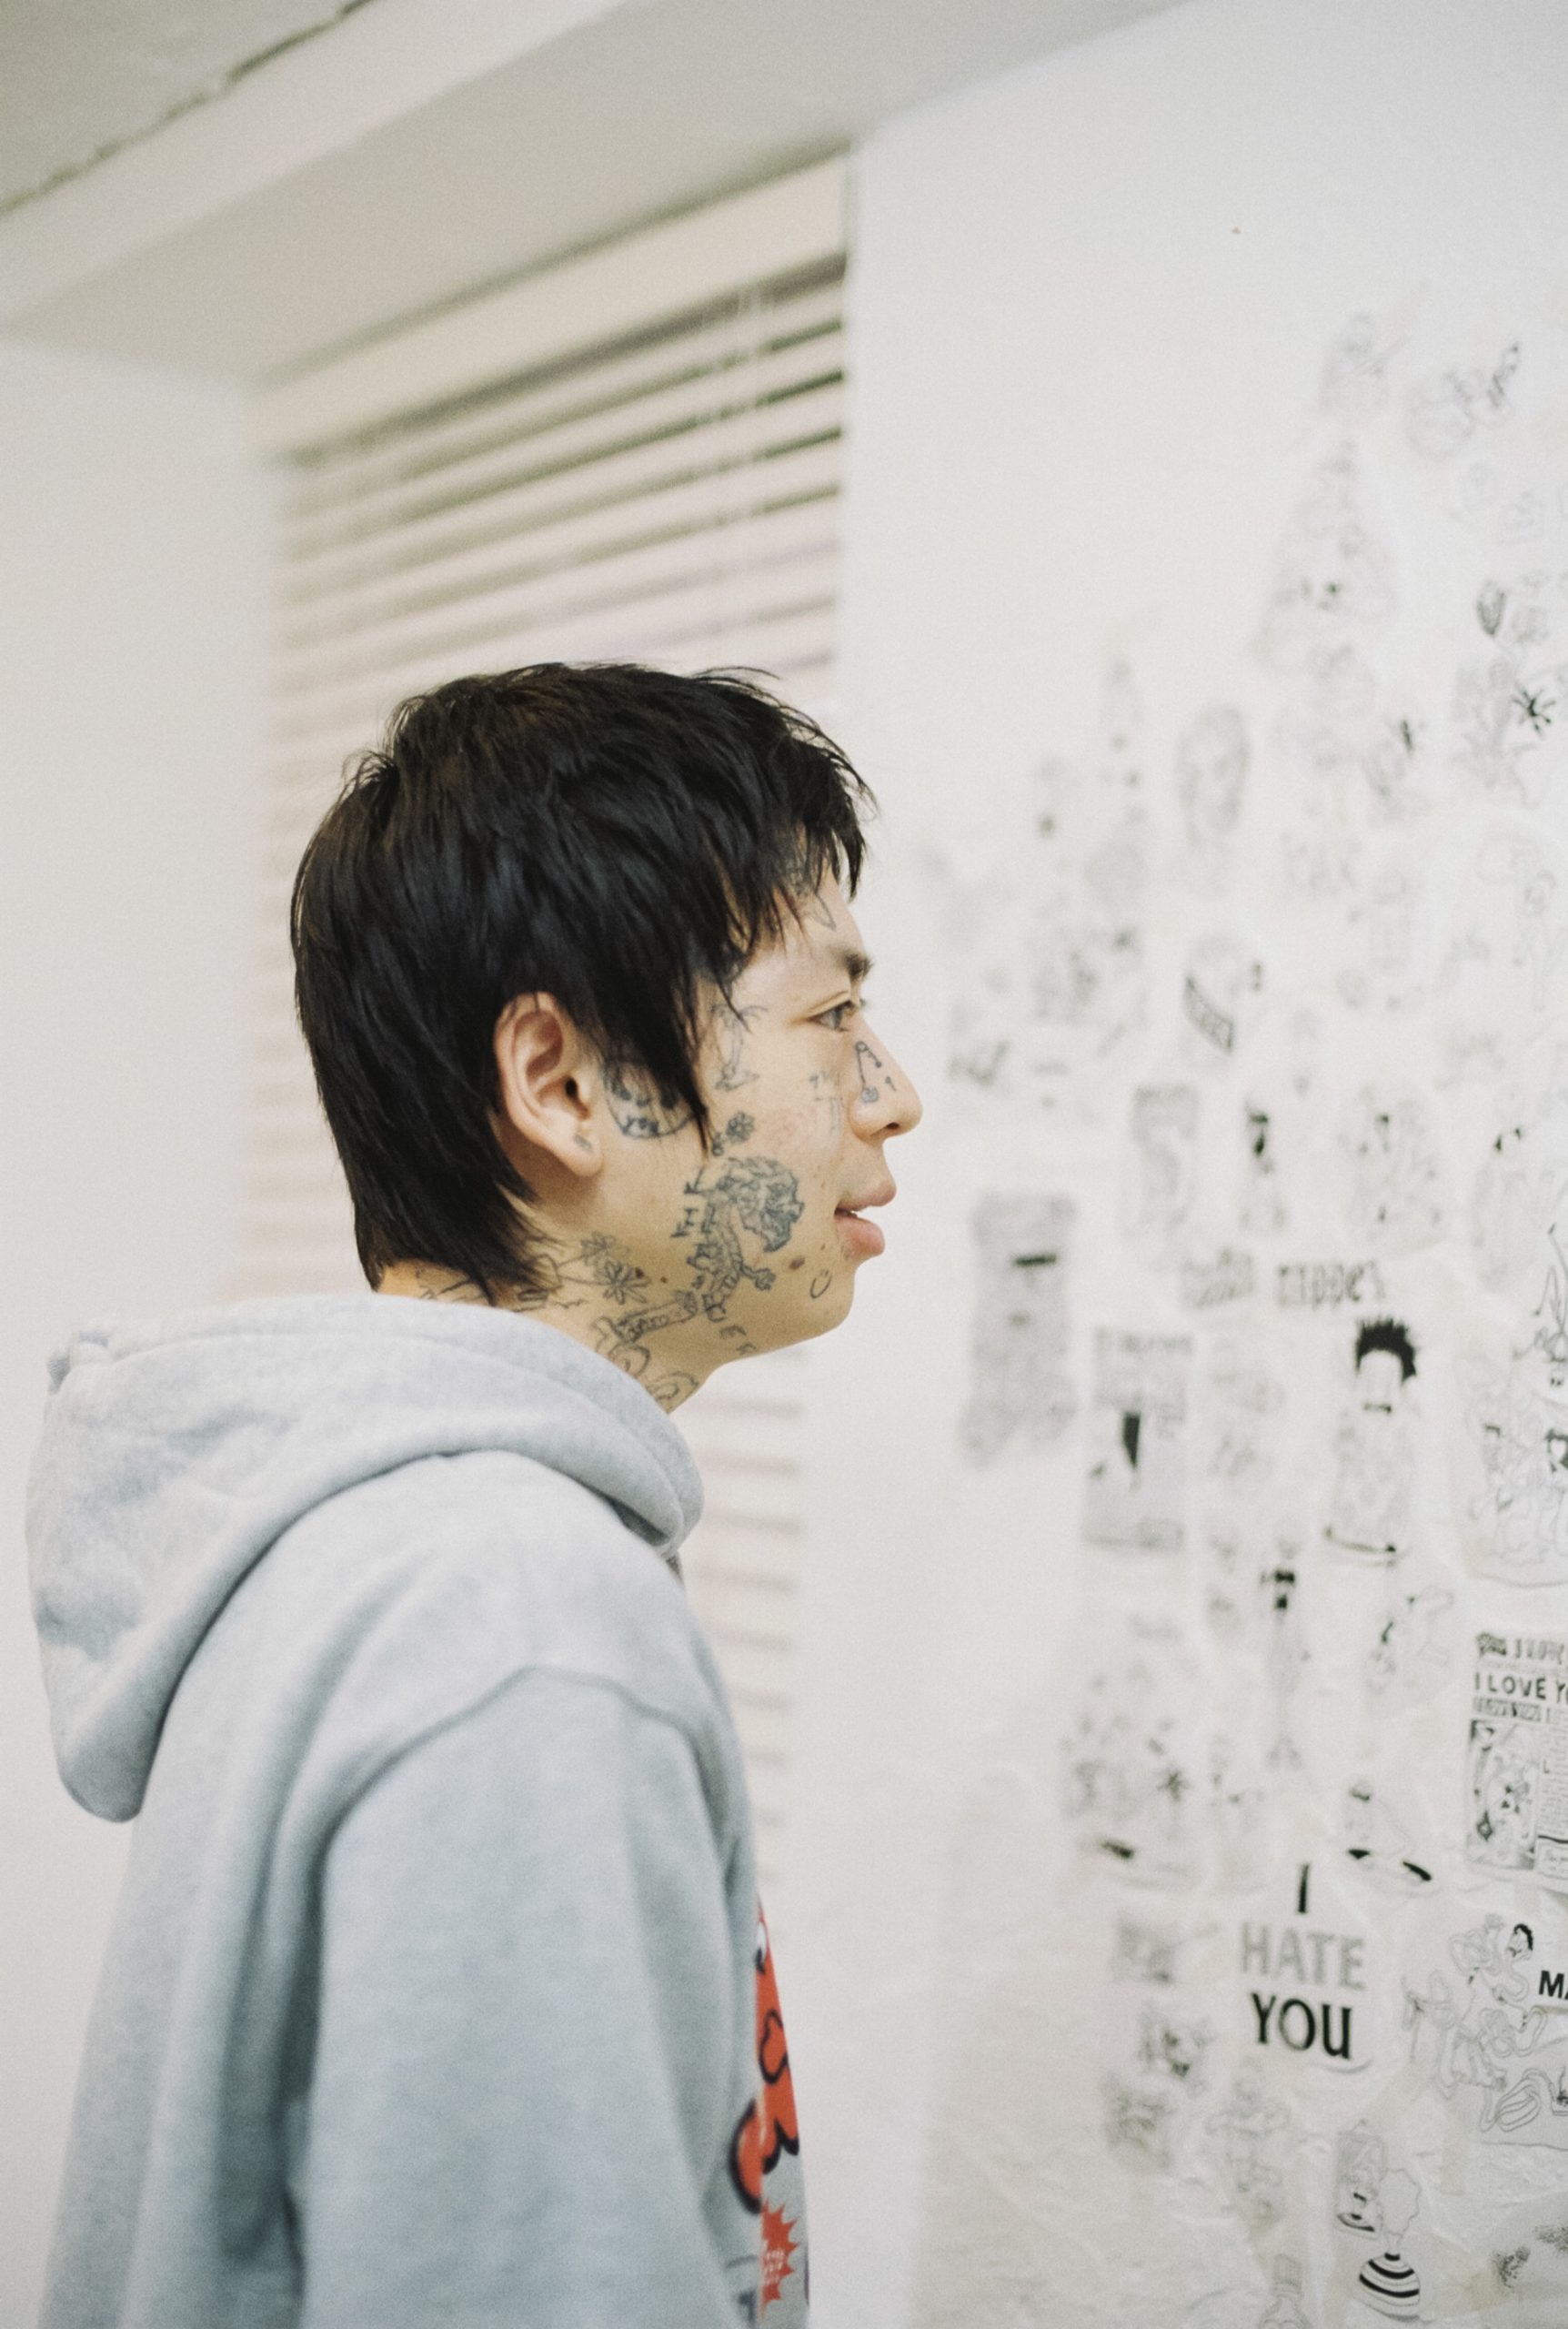 タトゥーアーティスト、TAPPEIのカテゴライズされない表現世界